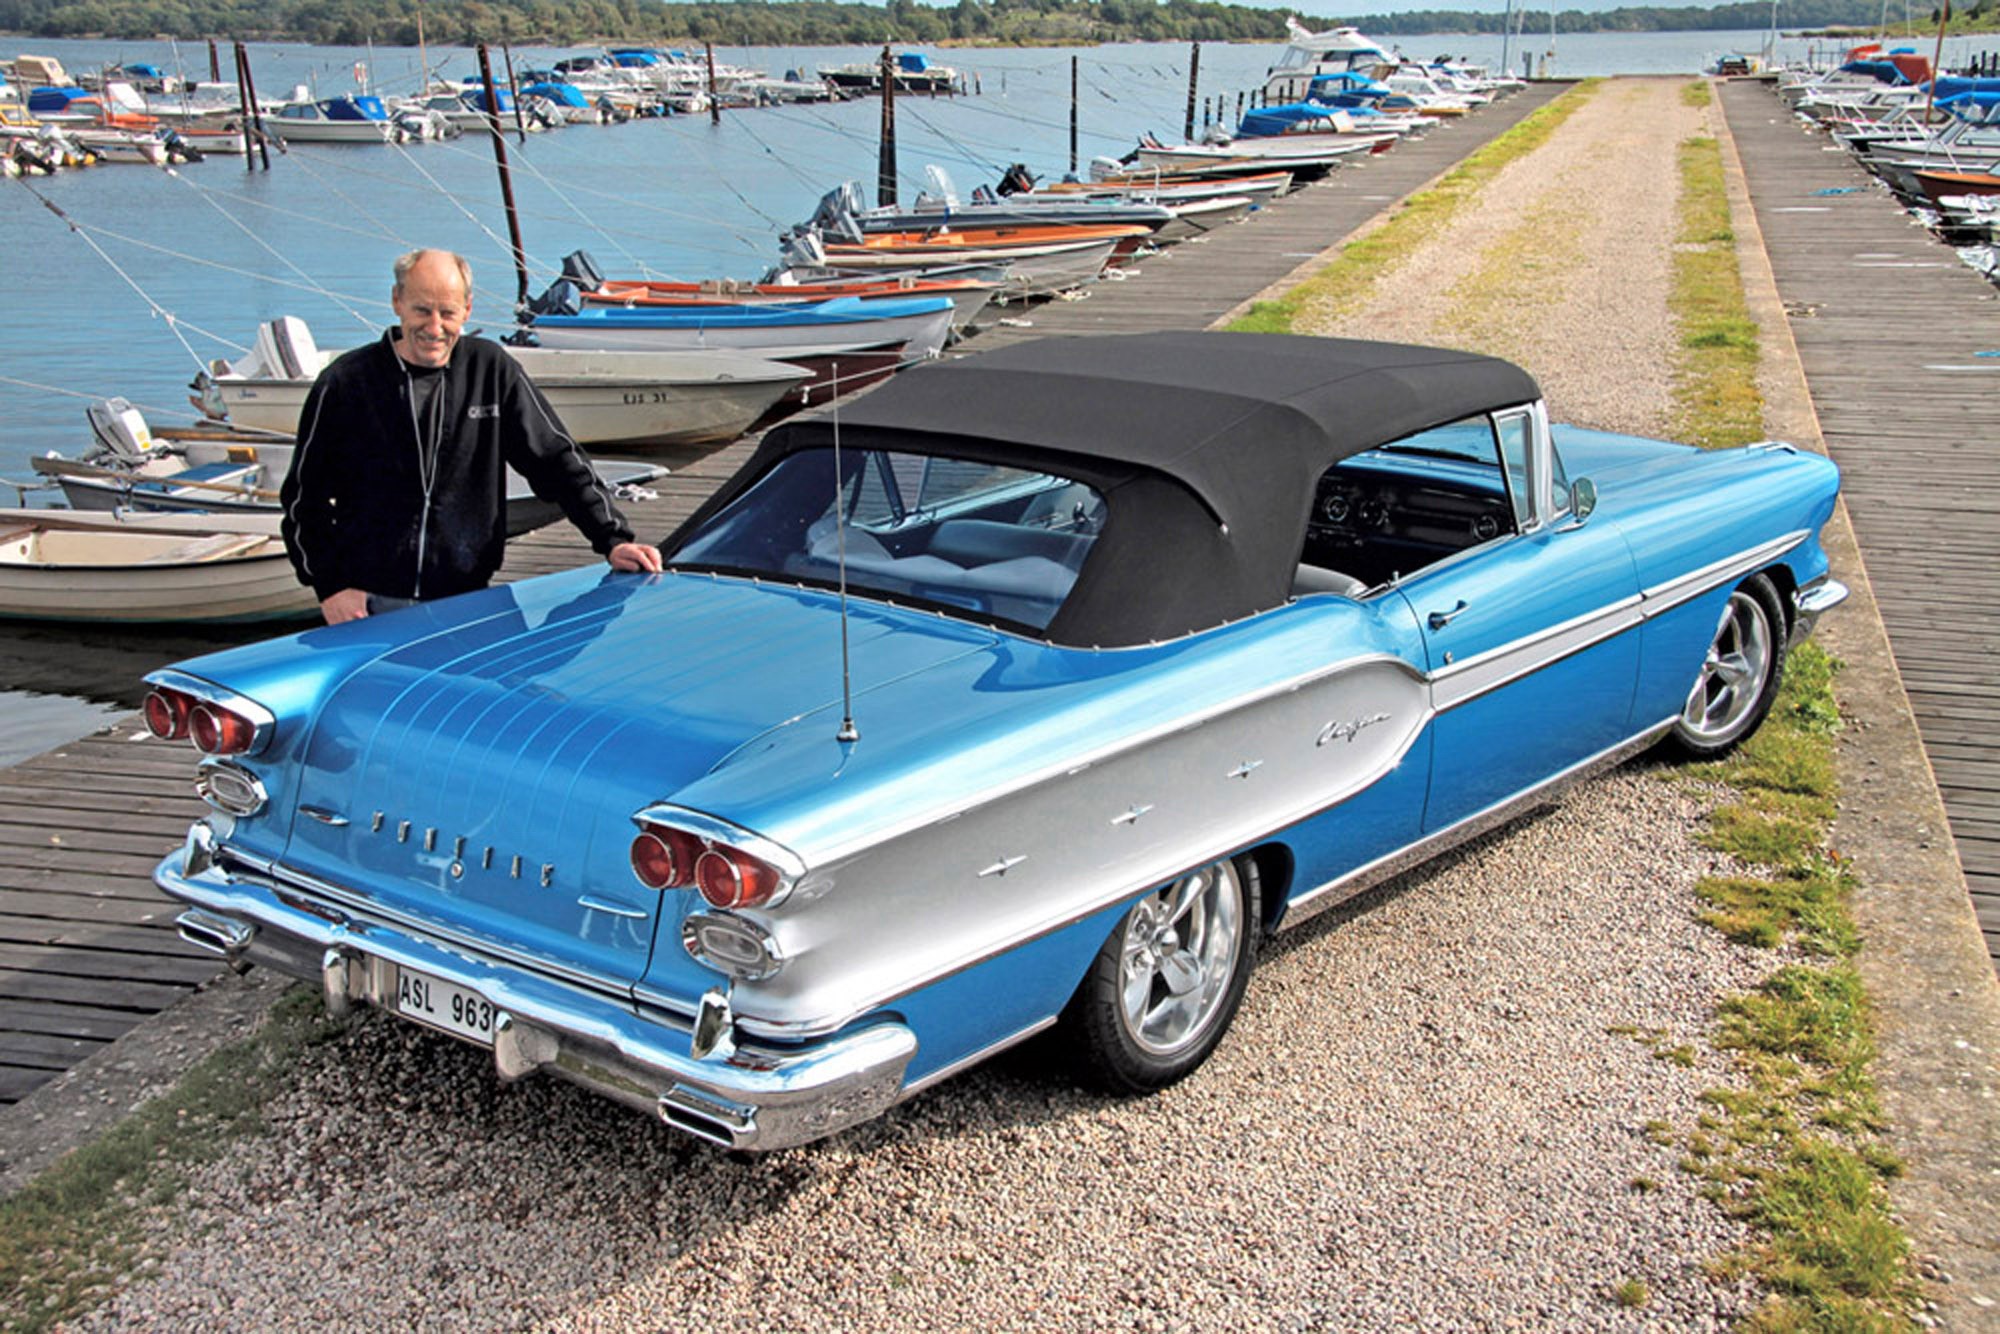 Nu väntar Oslo Motorshow i slutet av oktober där Lasses Pontiac tävlar om utmärkelsen ”Skandinaviens Flotteste Bil”.